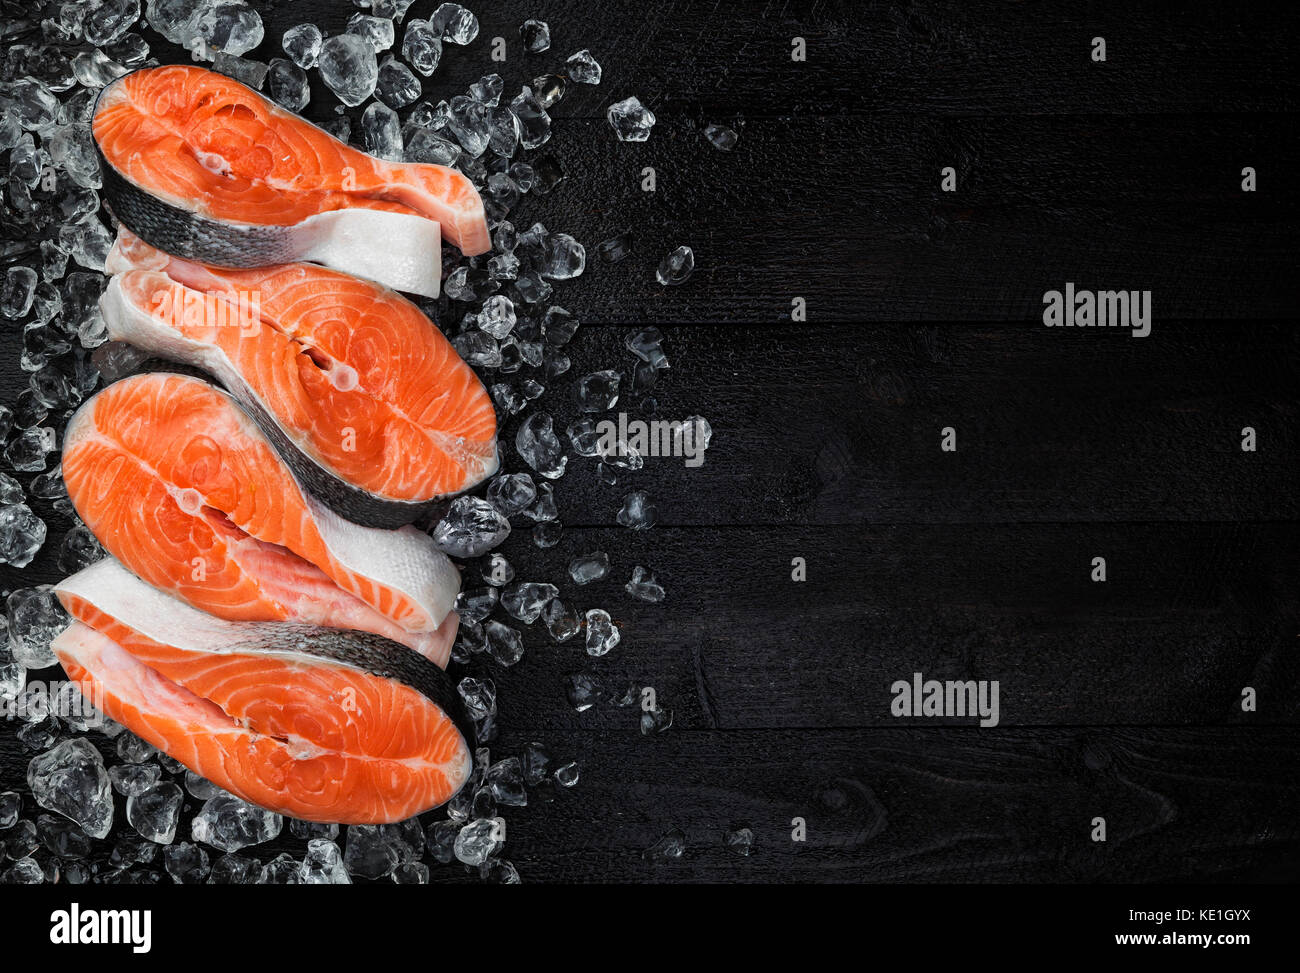 Lachssteak auf Eis auf schwarzen Holztisch Draufsicht, Fisch essen Konzept. Kopieren Sie Platz Stockfoto